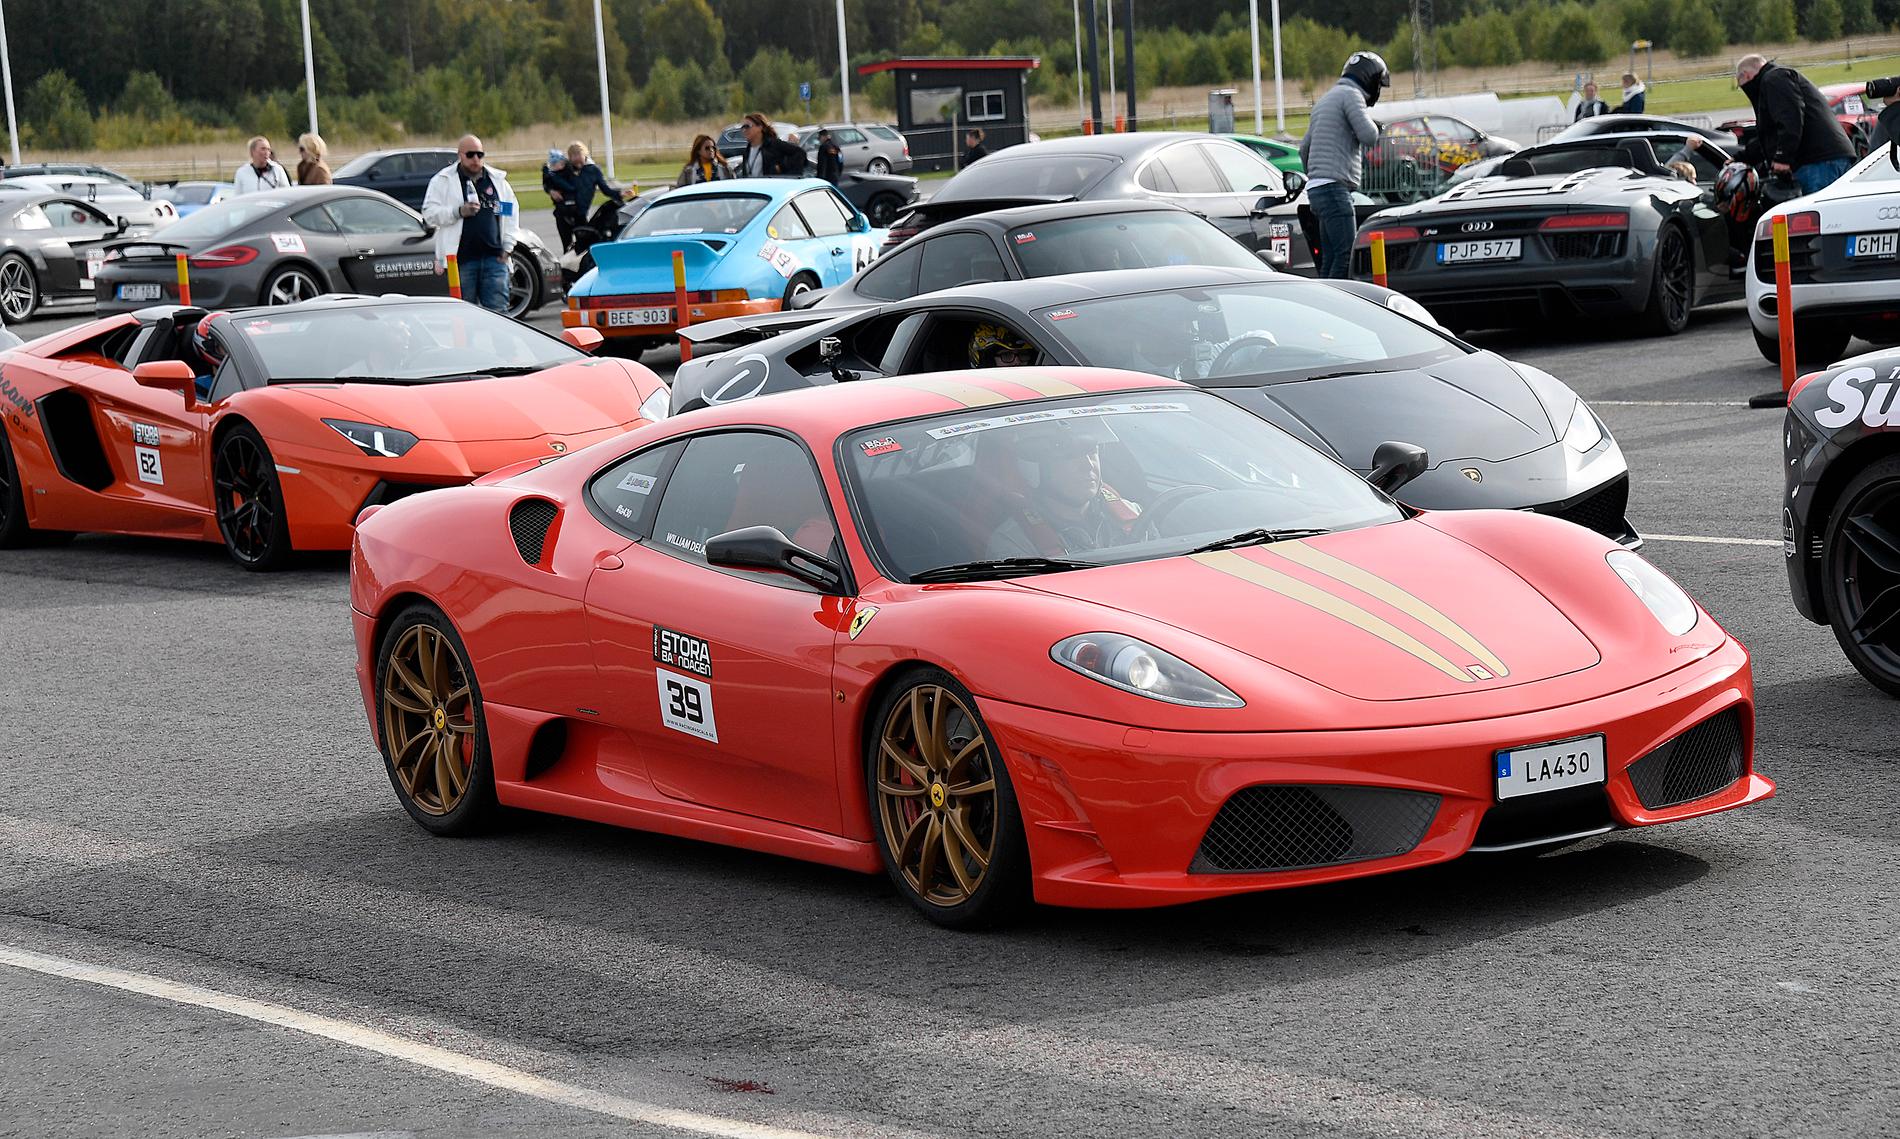 En av många röda Ferrari på plats, just den här en 430 Scuderia.